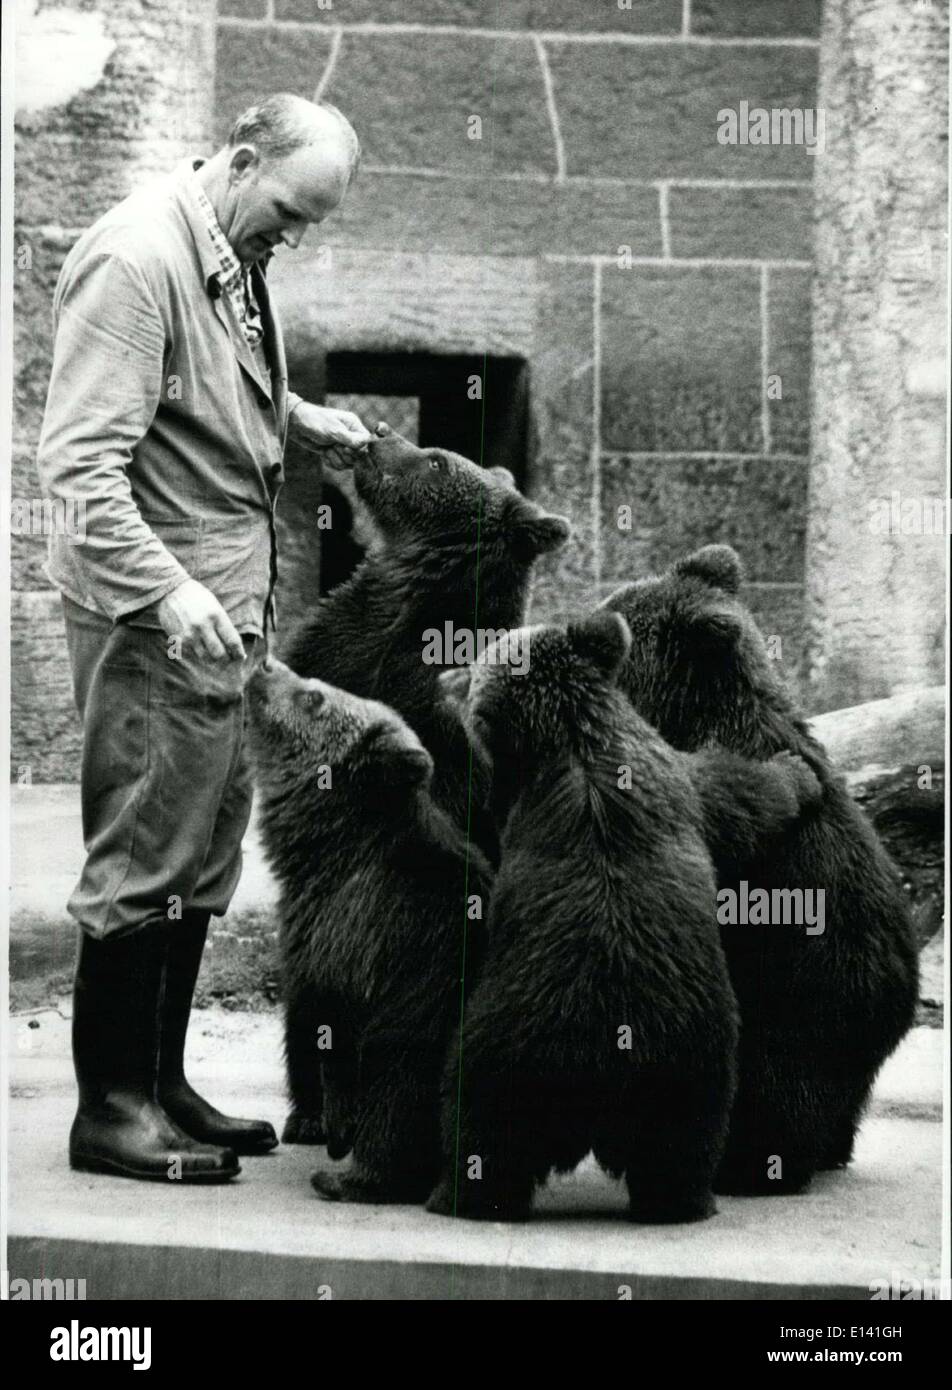 31. März 2012 - zeigen wenig russischen Braunbären in den zoologischen Gärten Hellabrunn in Munich.:Attachment ihre Telefonzentrale die Gebühren in den zoologischen Gärten Hellabrunn in München. Die Bären drängen sich um ihn herum, stehen auf ihrer Hindlesgs und verschlang aus der Hand, wenn er eine Süßigkeit aus seiner Tasche legen. Die russischen Braunbär-Iunge - sie sind insgesamt fünf, aber man zeigt eine kleine Tendenz für Familie und war nicht zu fotografieren - immer noch eine Zeitlang im Löwen-Haus, Leben, für die Verlegung-Out für sie nicht vor Ostern 1978 fertiggestellt sein wird. Stockfoto